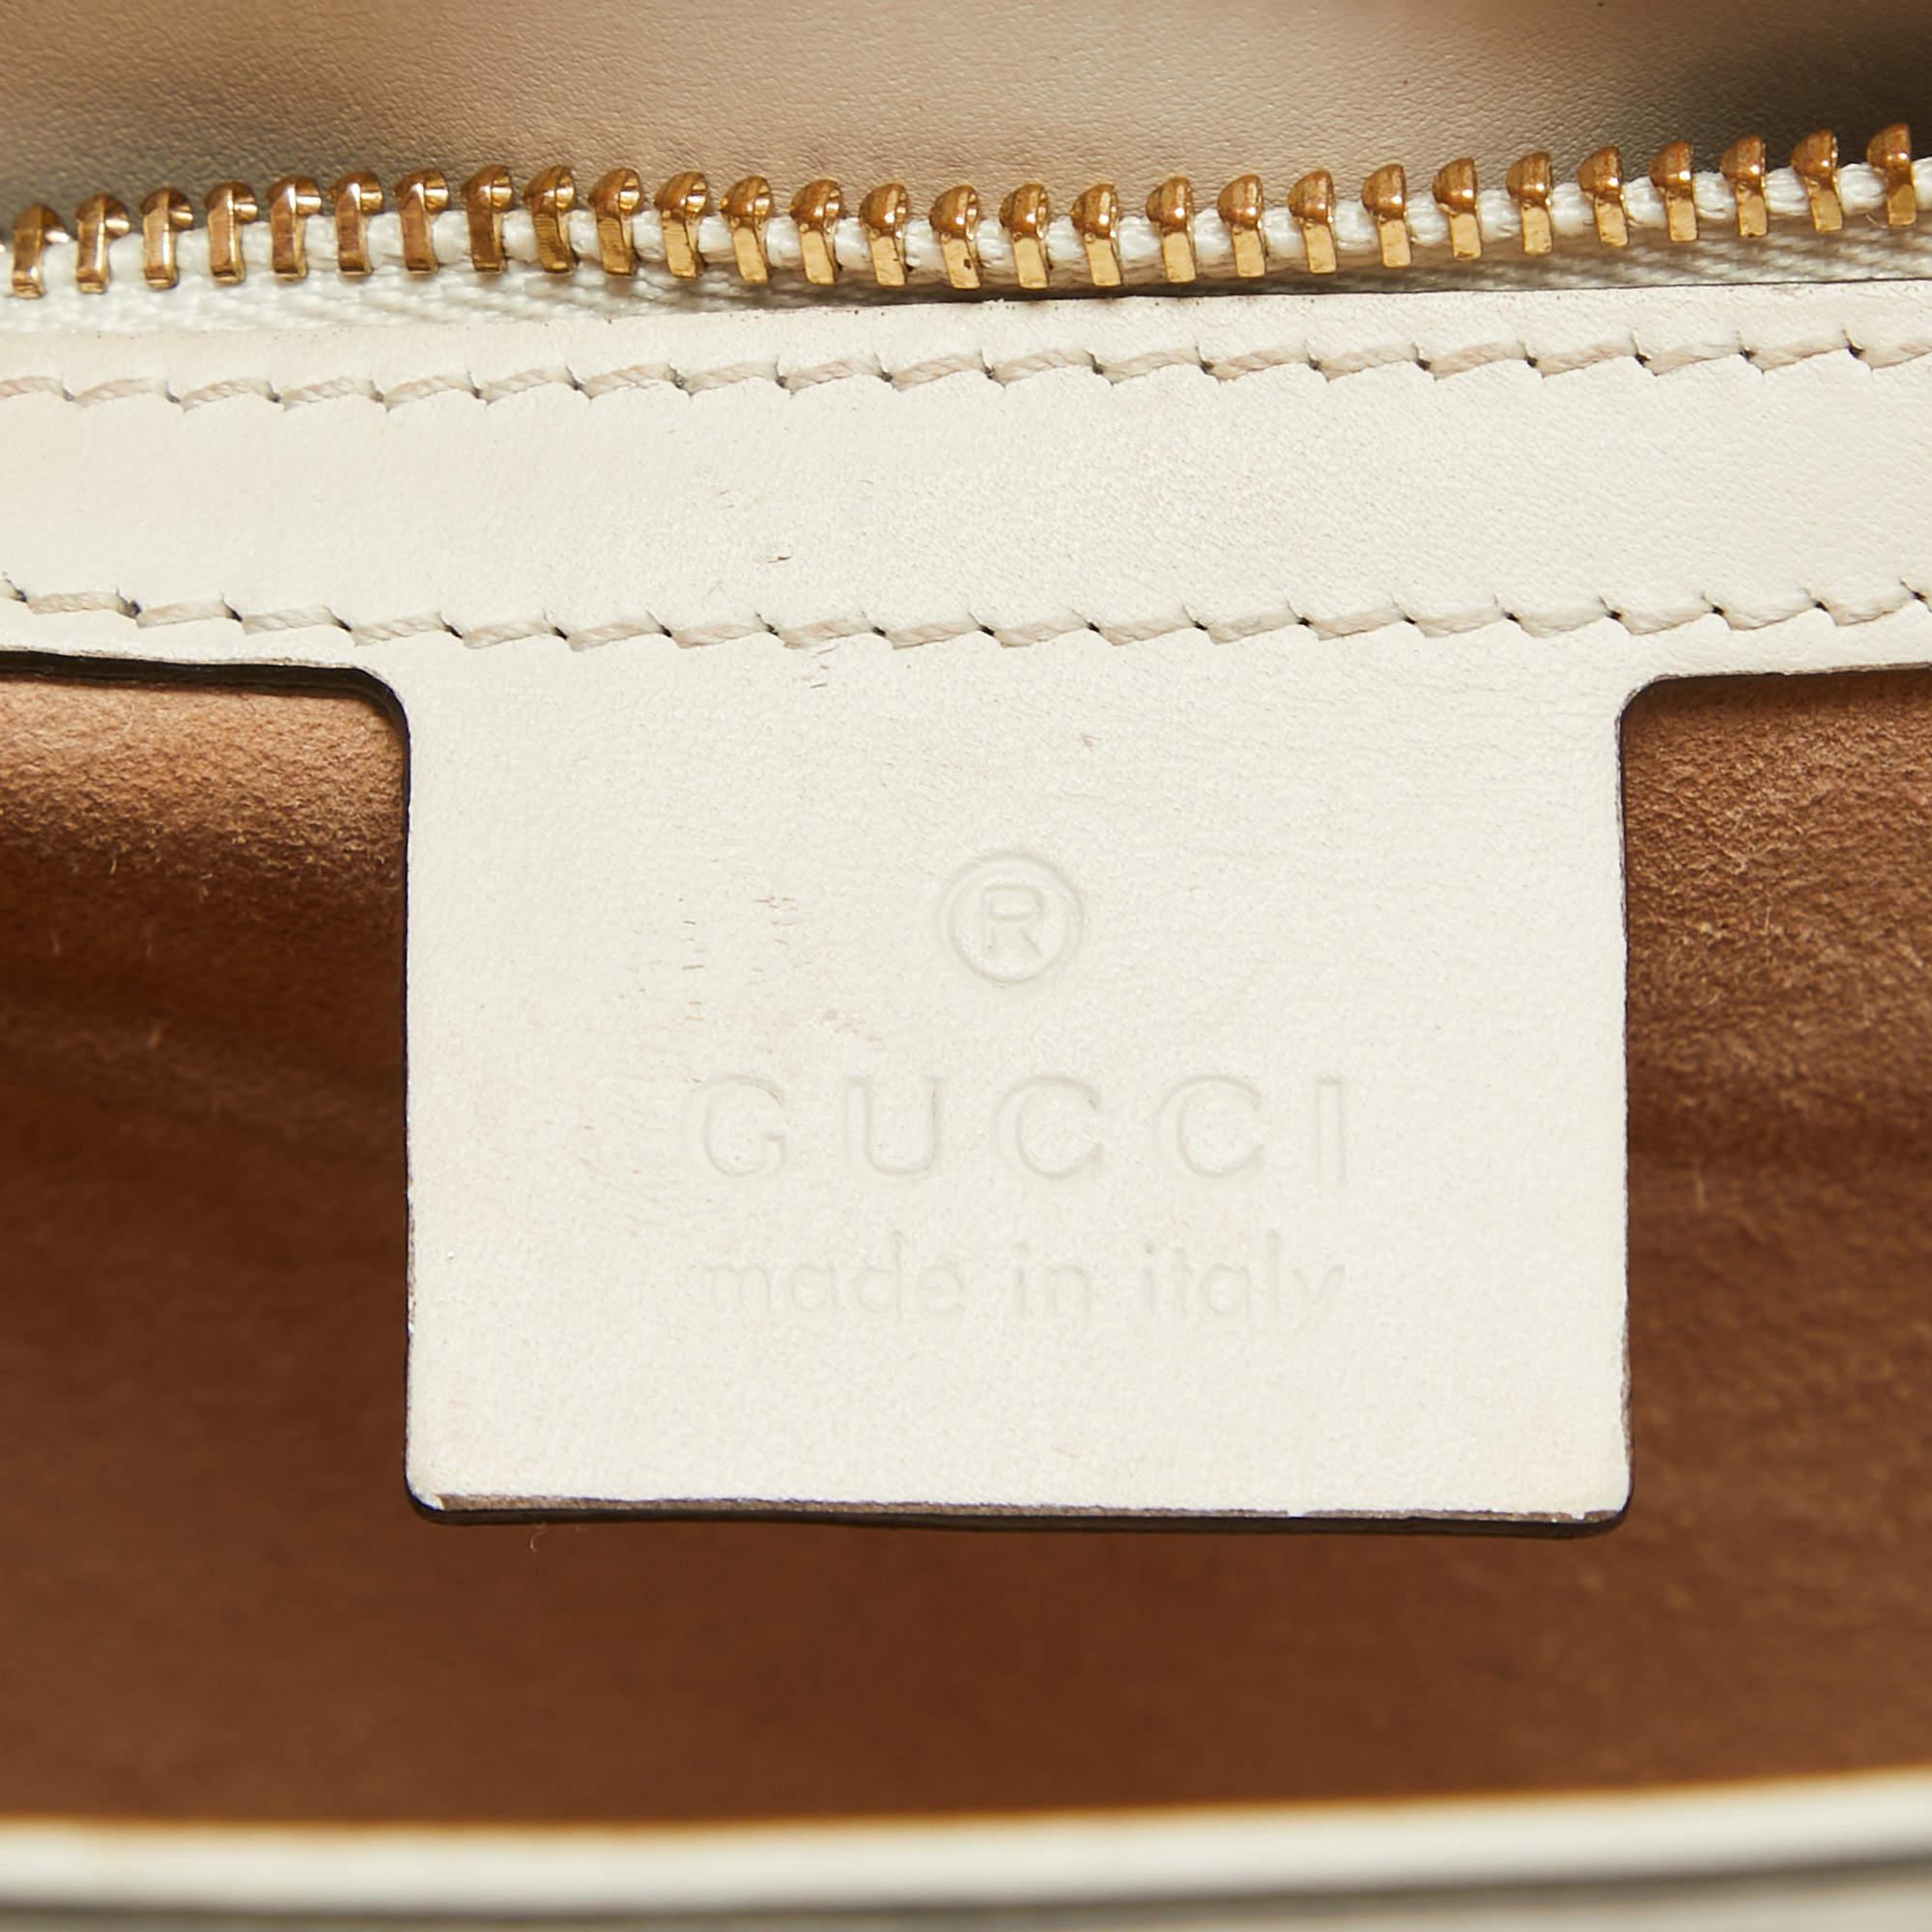 Gucci Off White Leather Small Web Sylvie Shoulder Bag In Good Condition For Sale In Dubai, Al Qouz 2